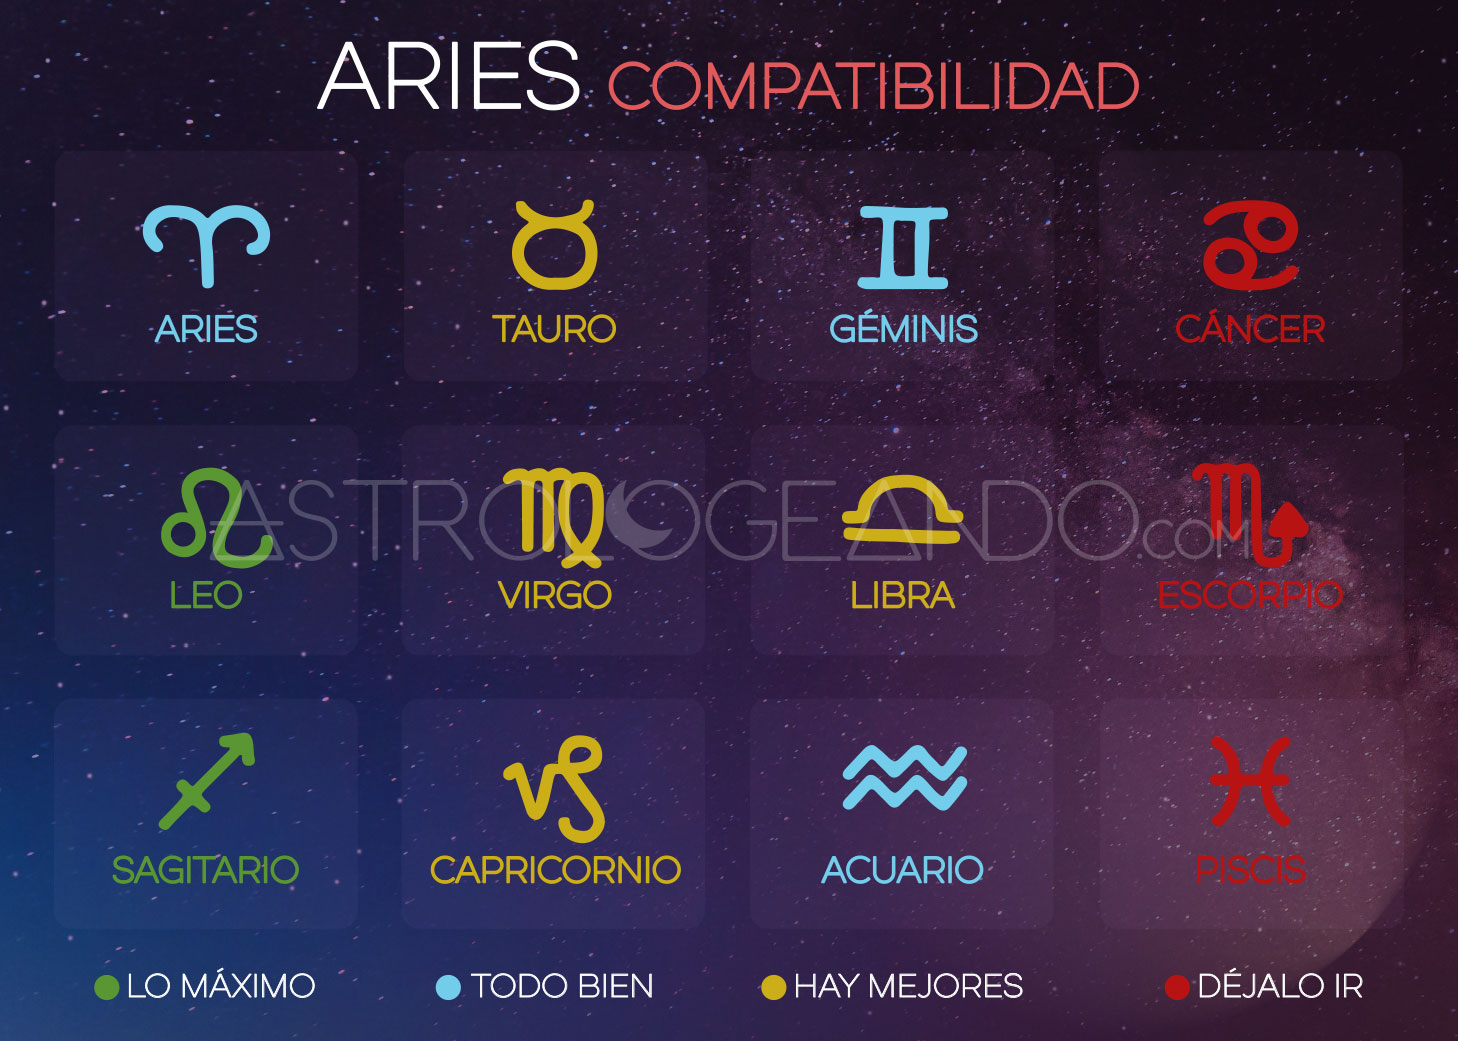 Aries: Compatibilidad